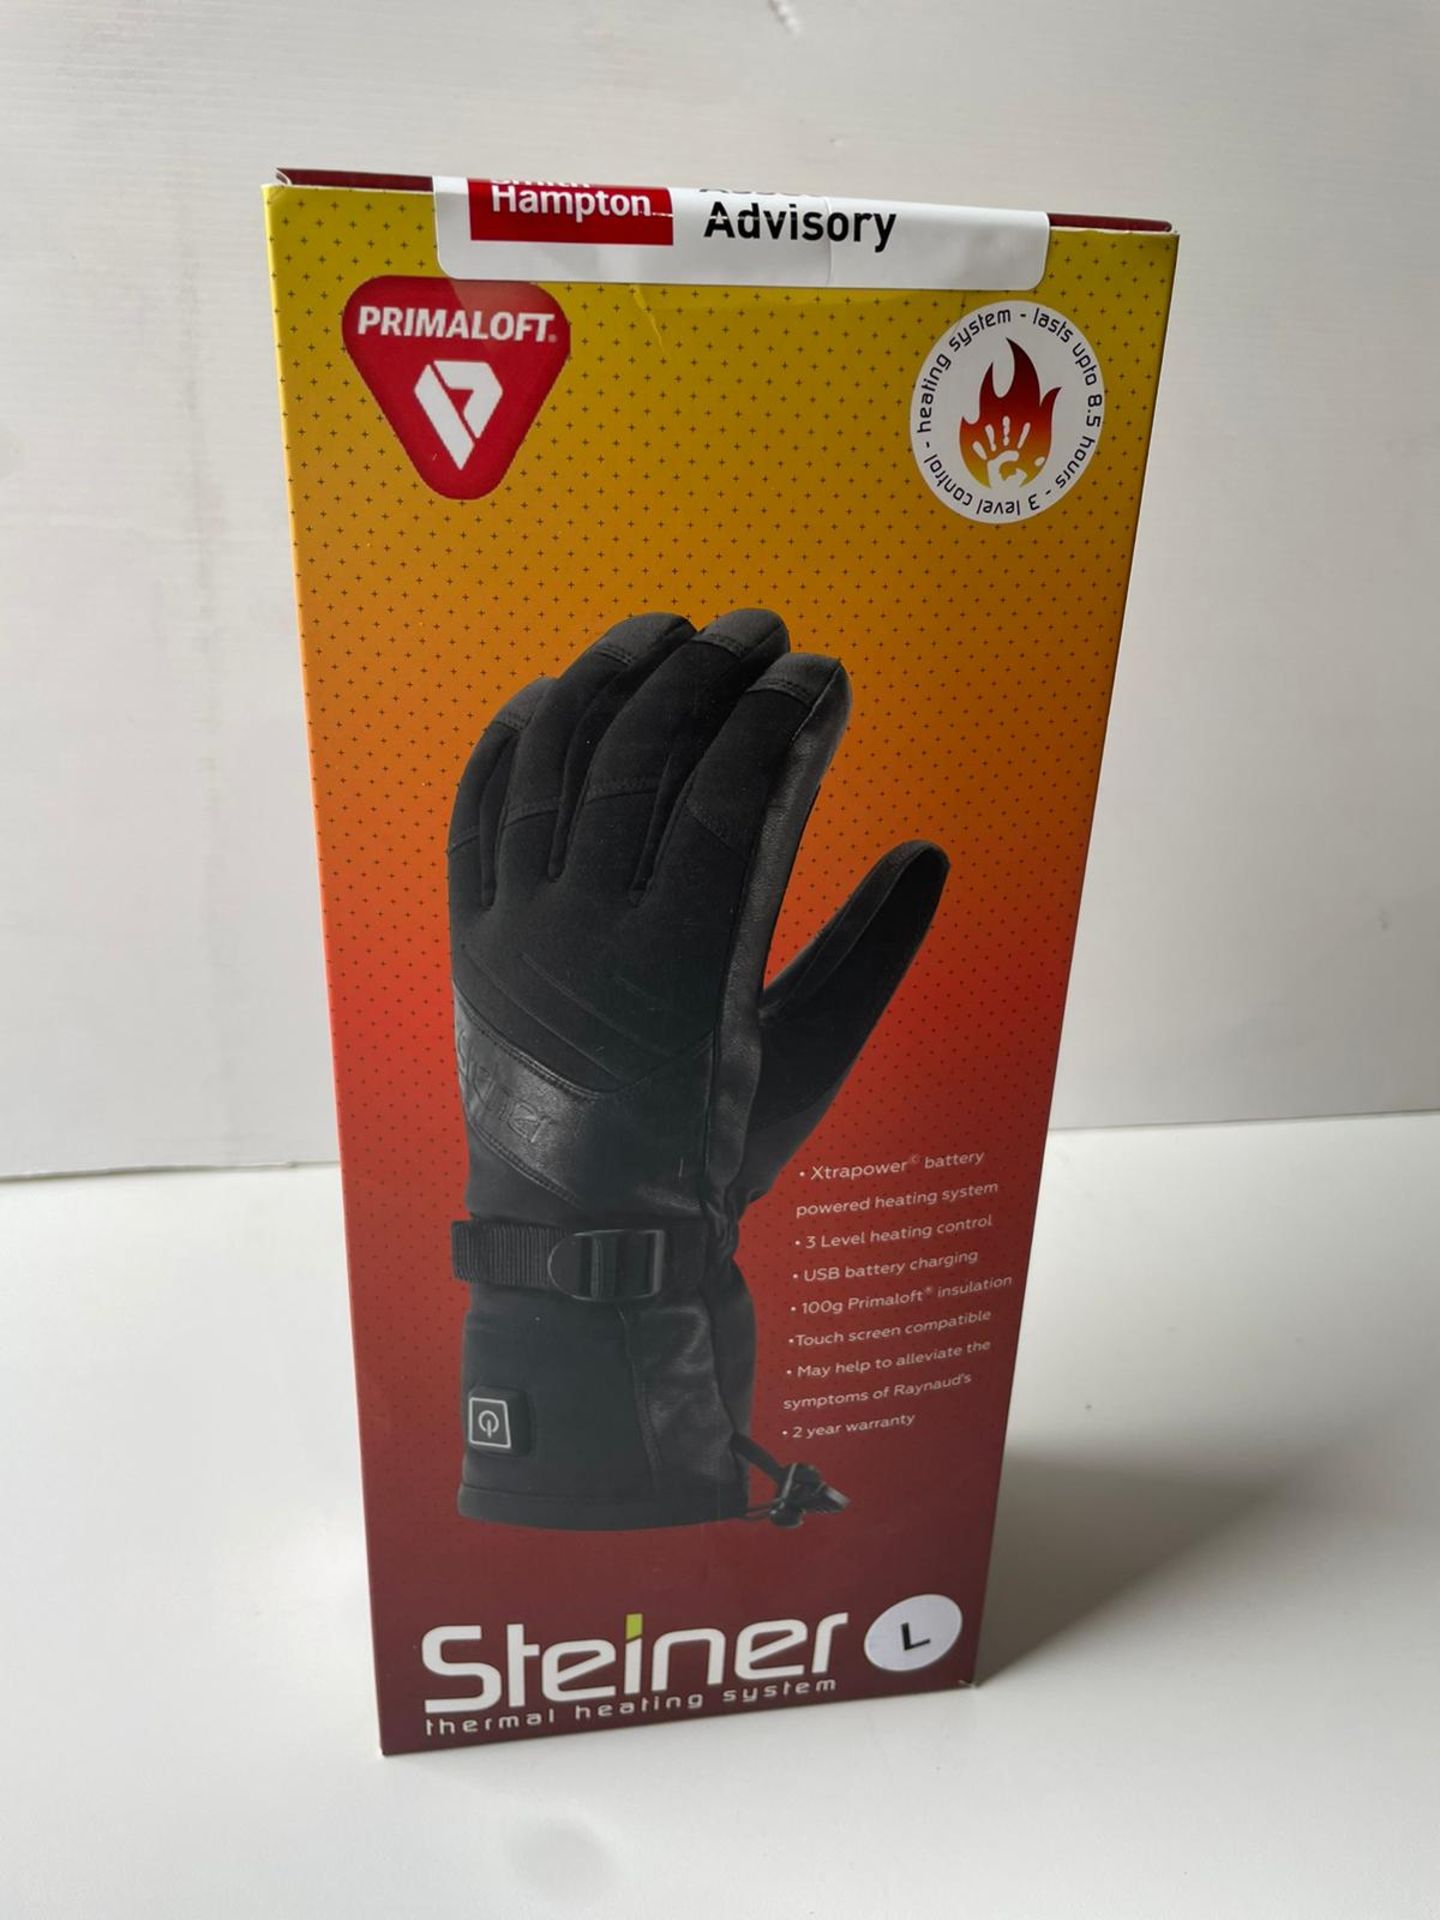 Steiner heated gloves M - Image 2 of 3